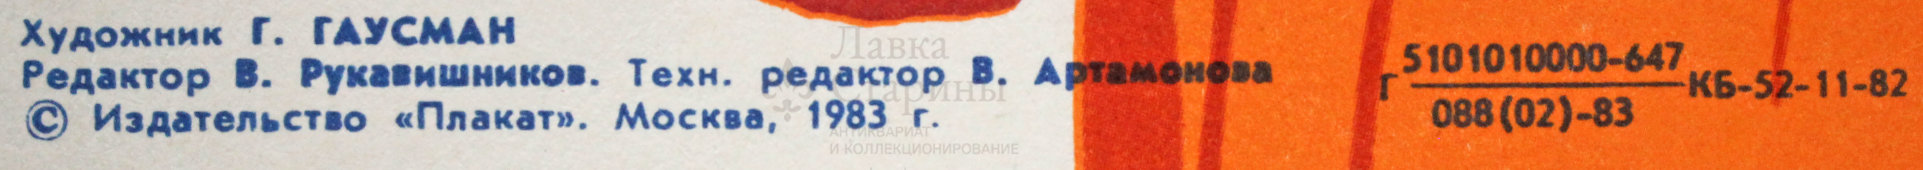 Советский агитационный плакат «Много снега накопил - гору хлеба получил!», художник Г. Гаусман, 1983 г.